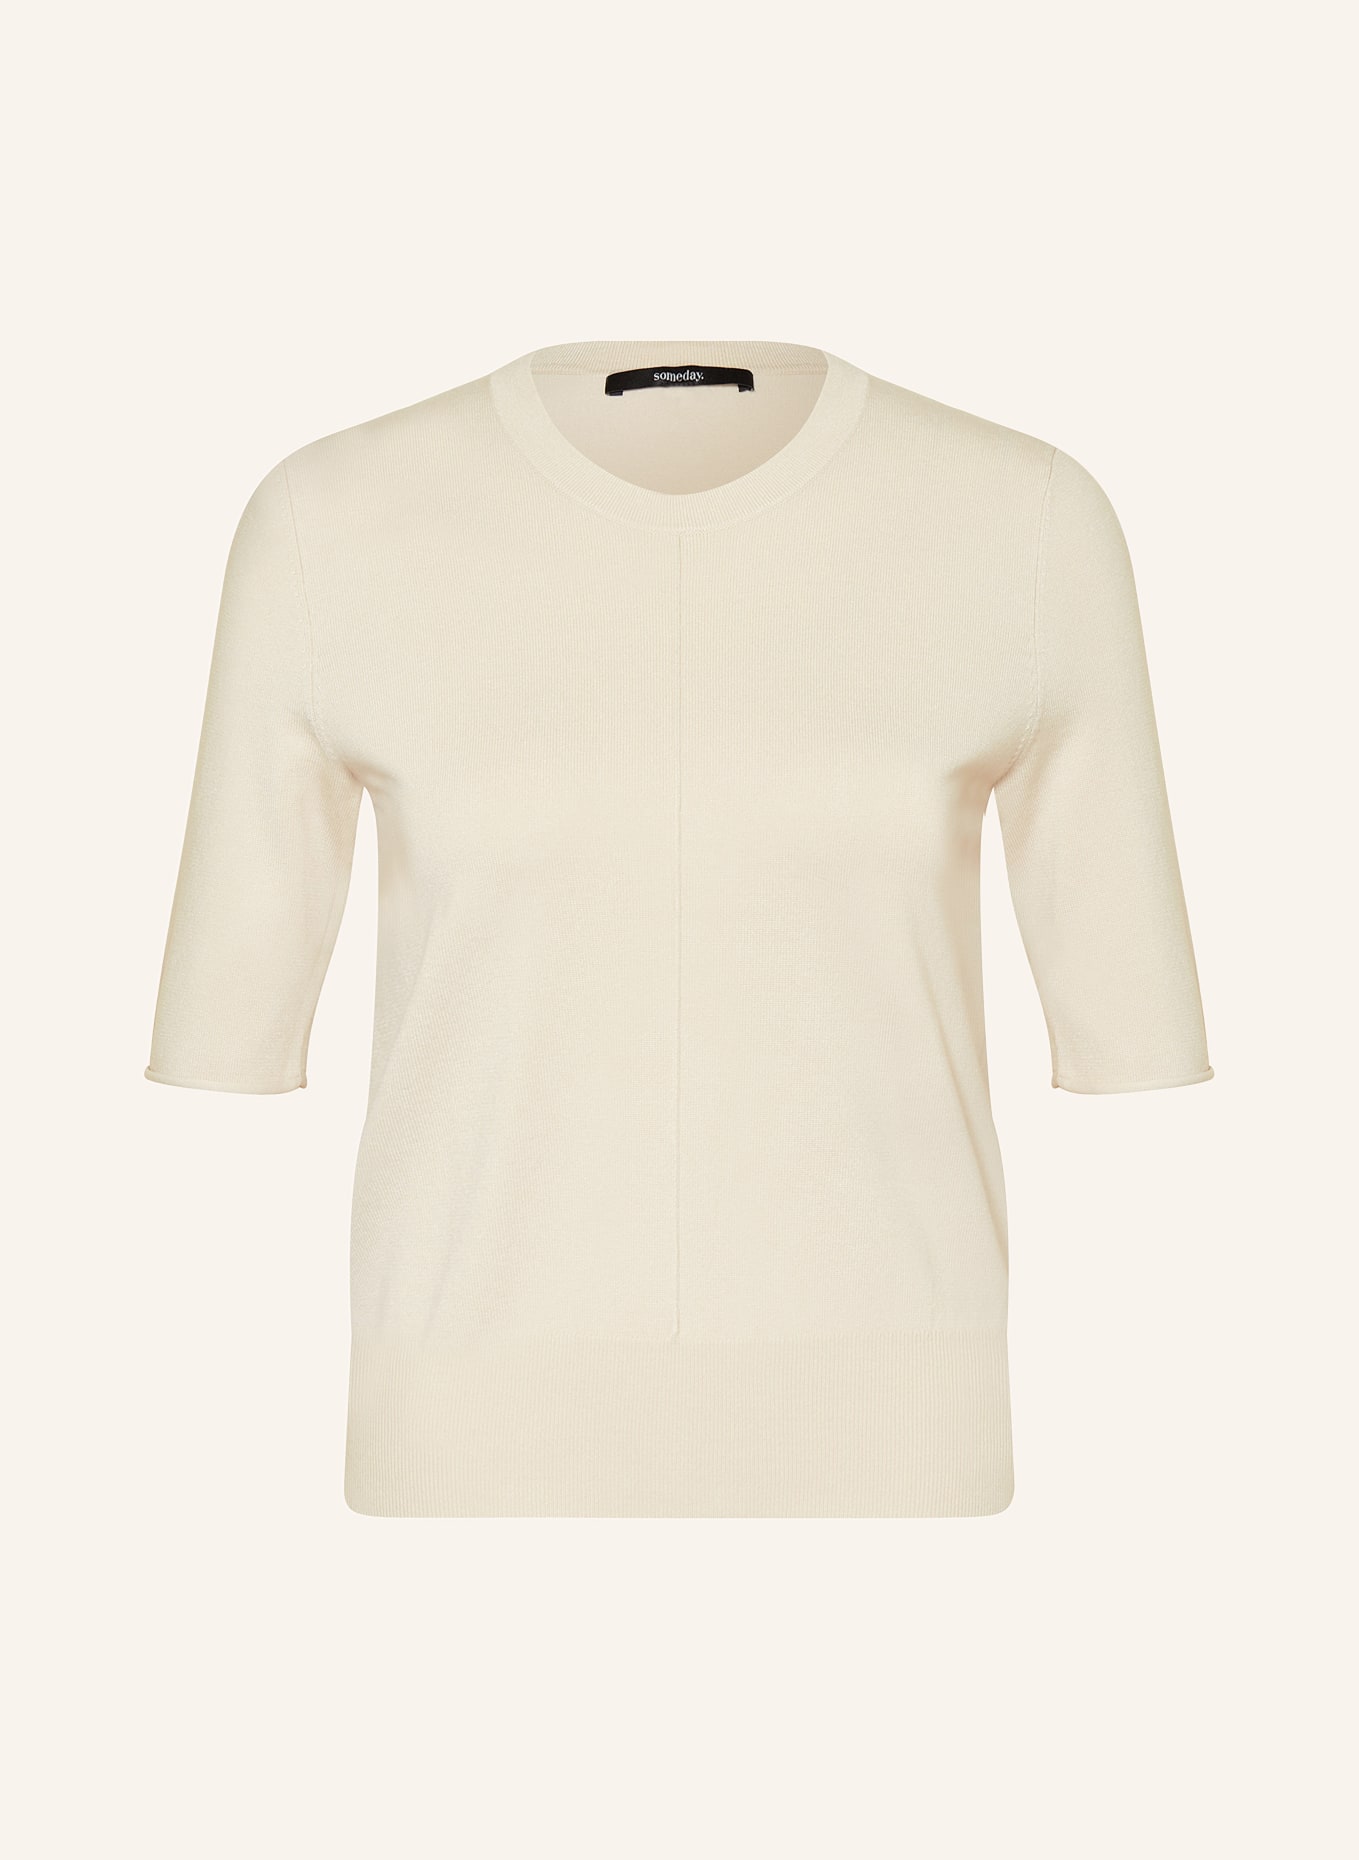 someday Strickshirt TSUMI, Farbe: CREME (Bild 1)